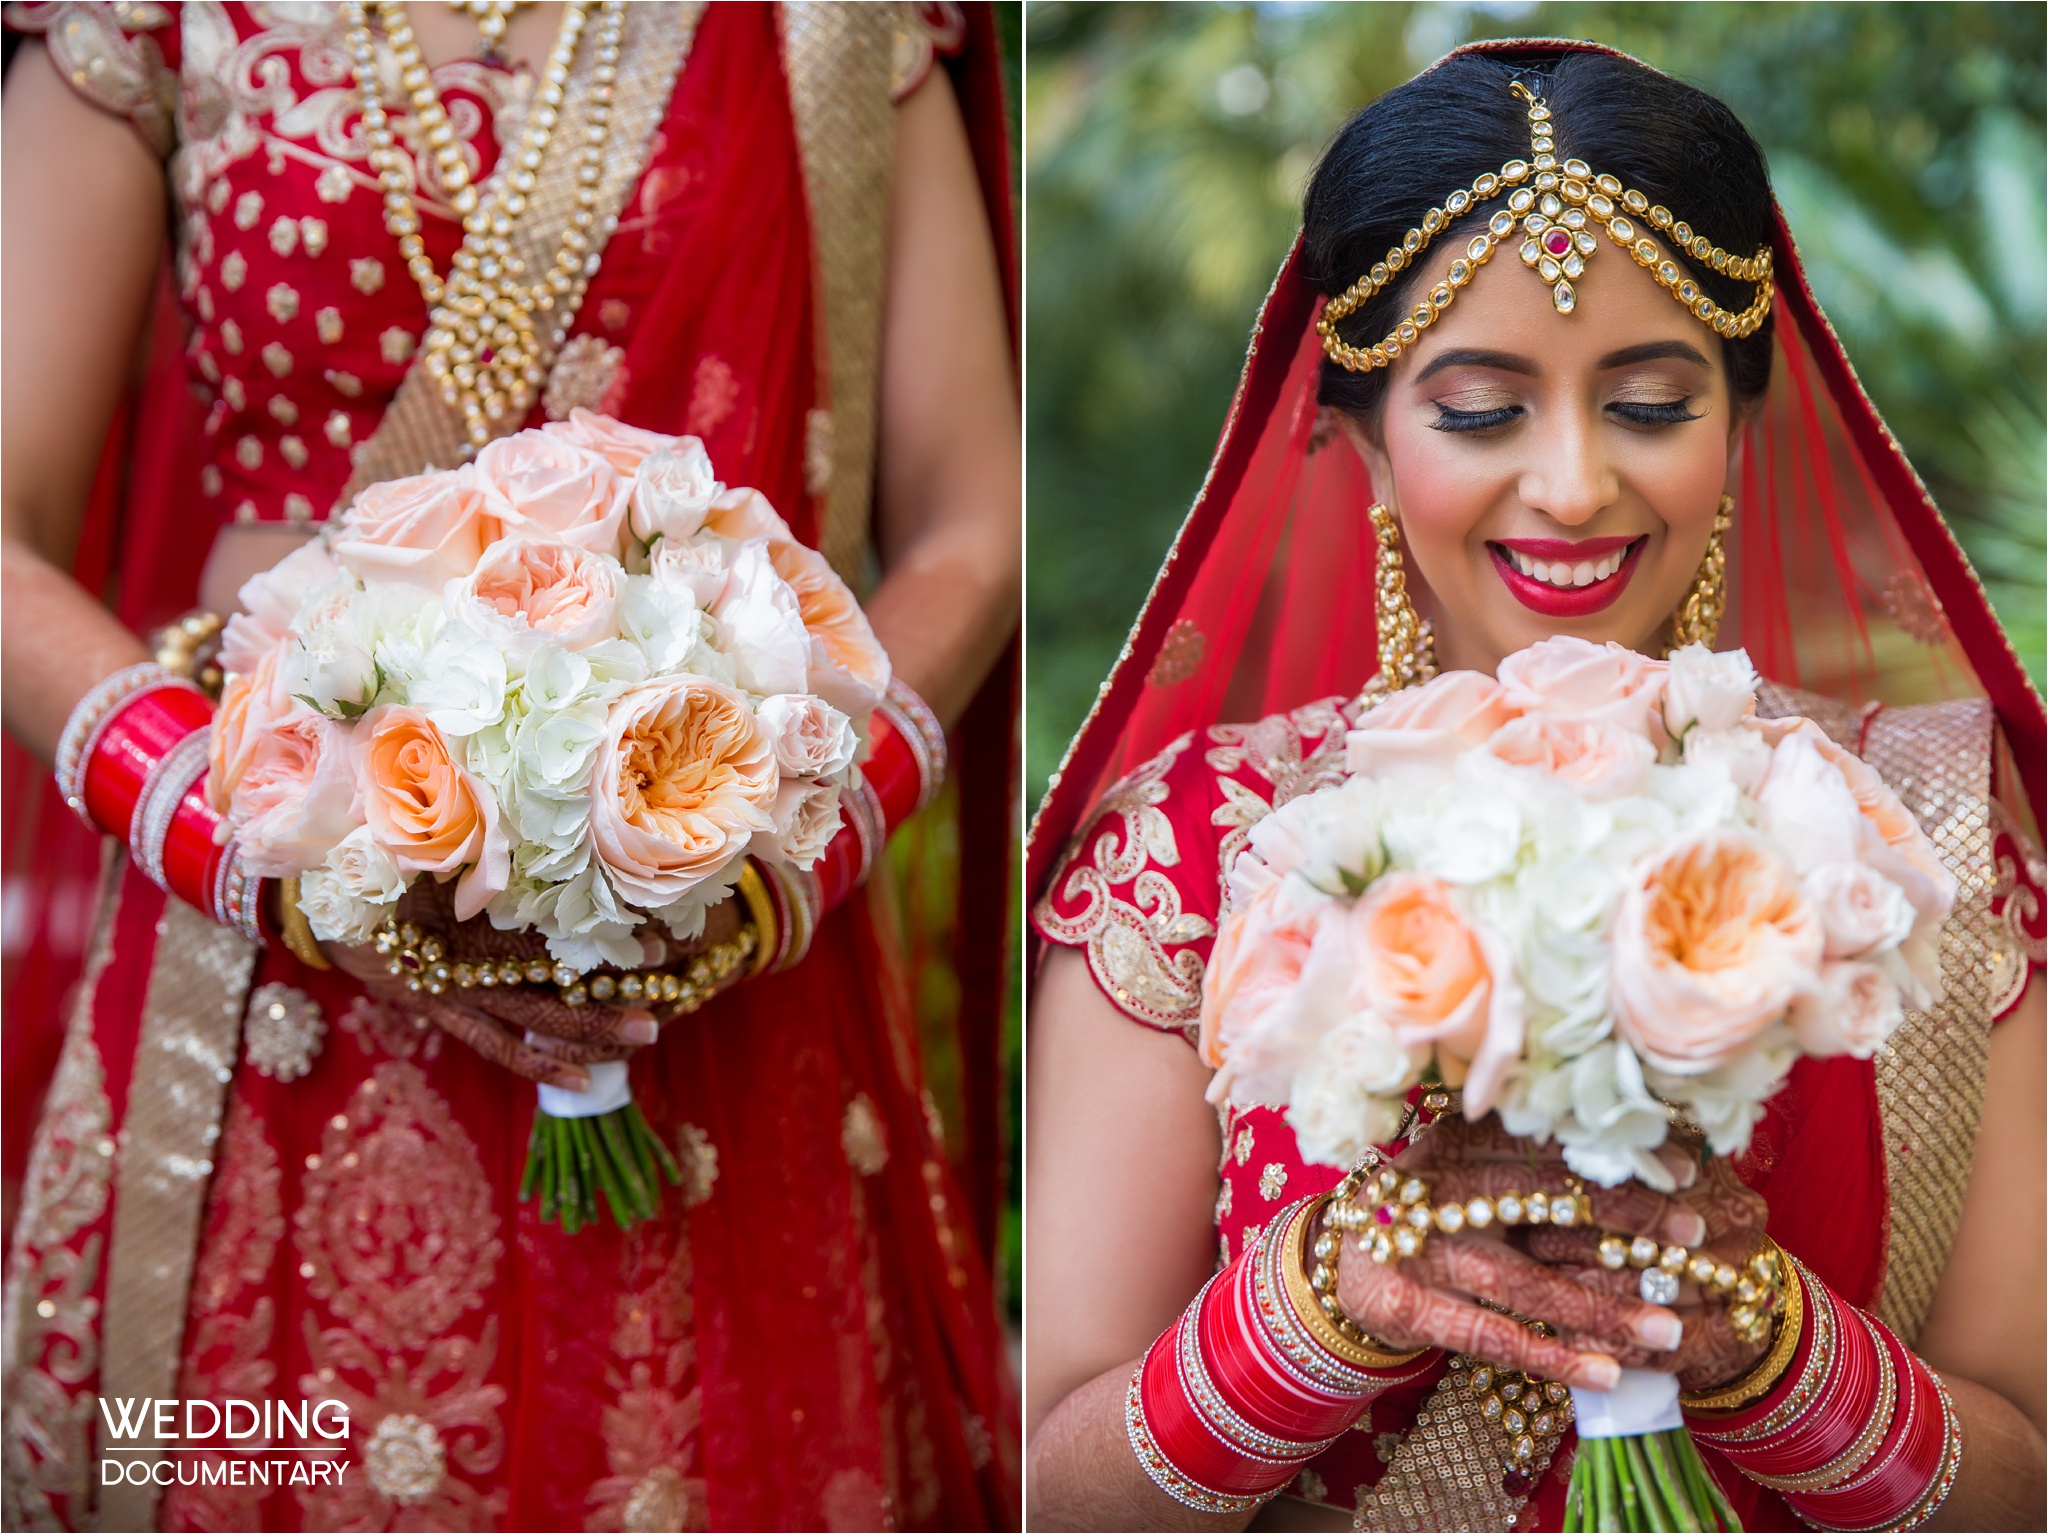 WeddingPhotography/Bride=Bride,